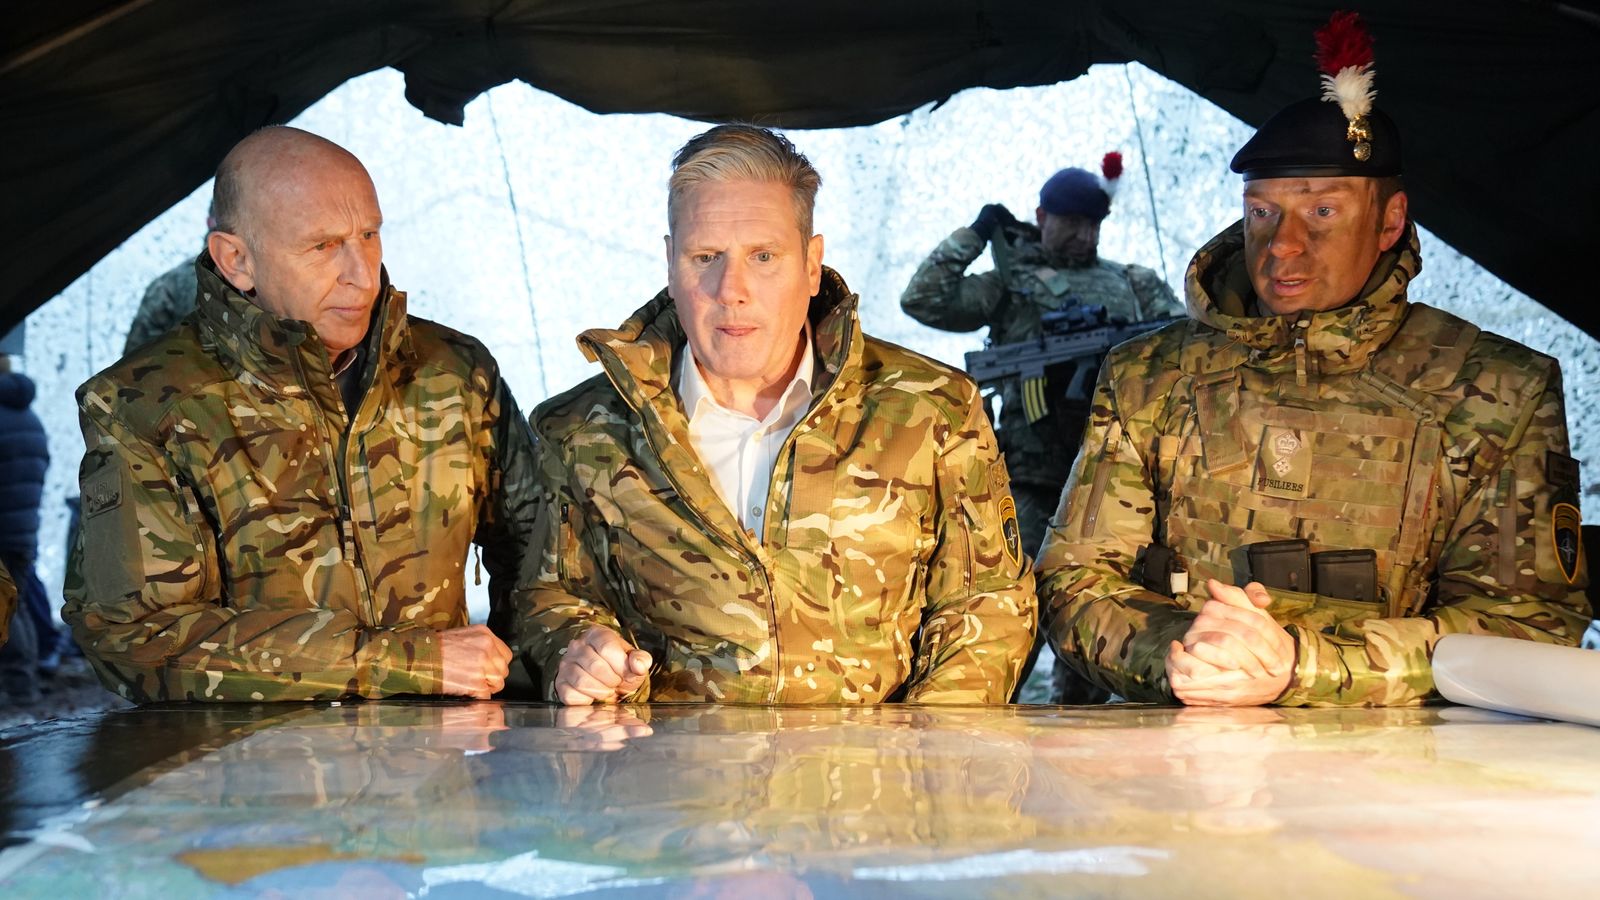 رئيس حزب العمال البريطاني السير كير ستارمر خلال زيارته للقوات البريطانية في قاعدة تابا التابعة لحلف الناتو في إستونيا